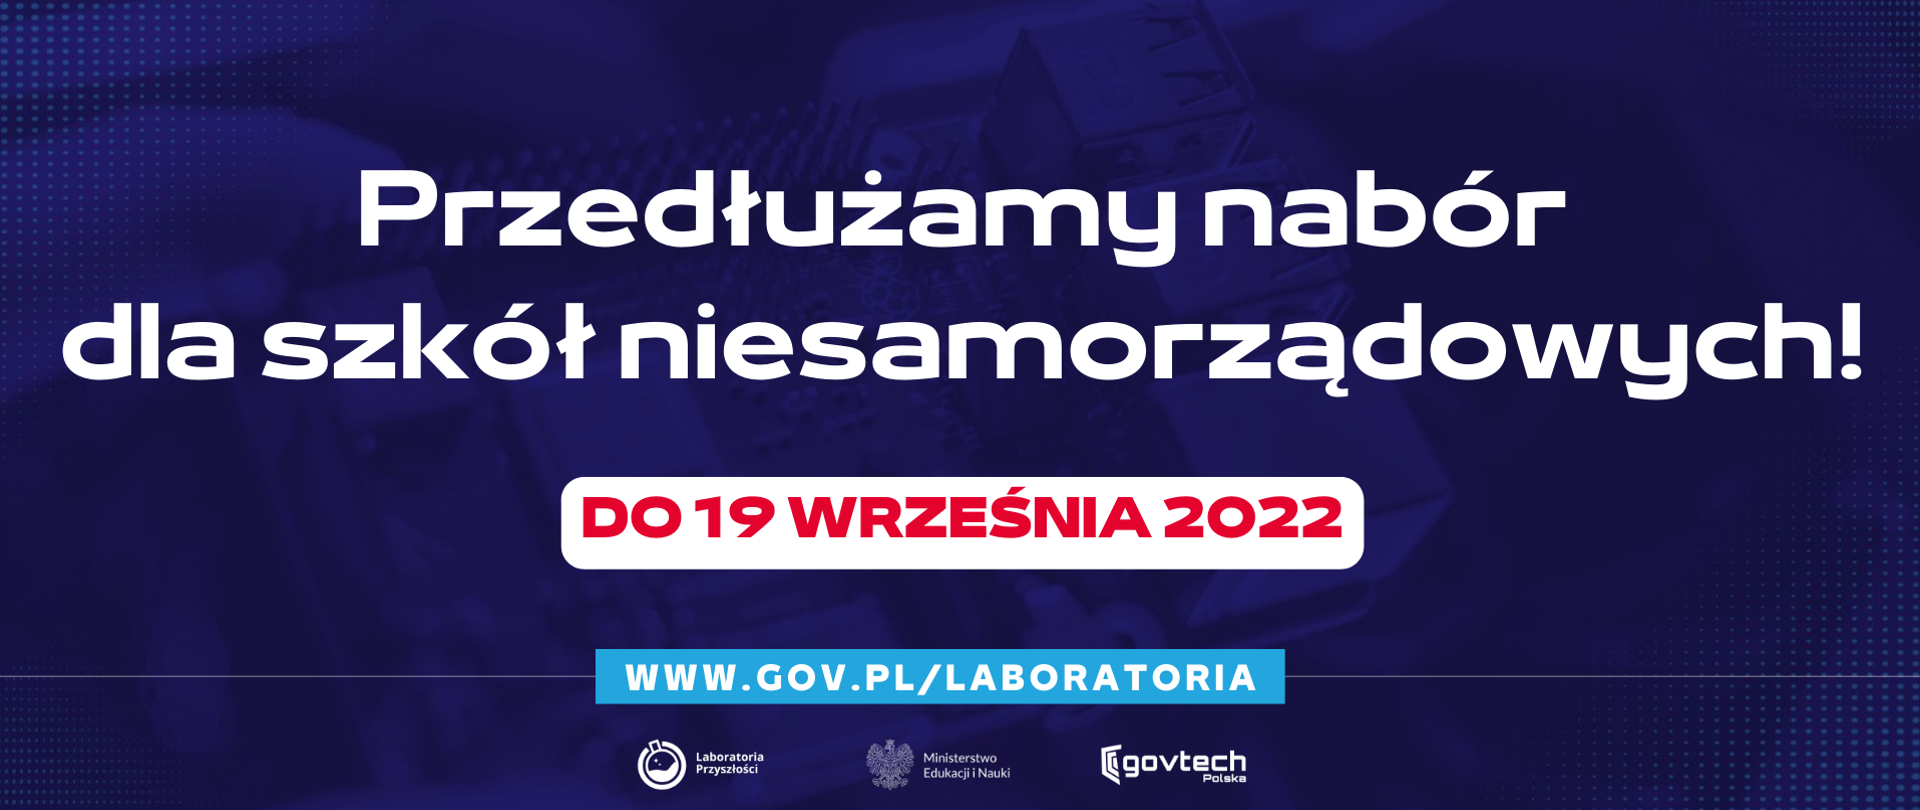 Przedłużamy nabór dla szkół niesamorządowych
do 19 września 2022
www.gov.pl/laboratoria